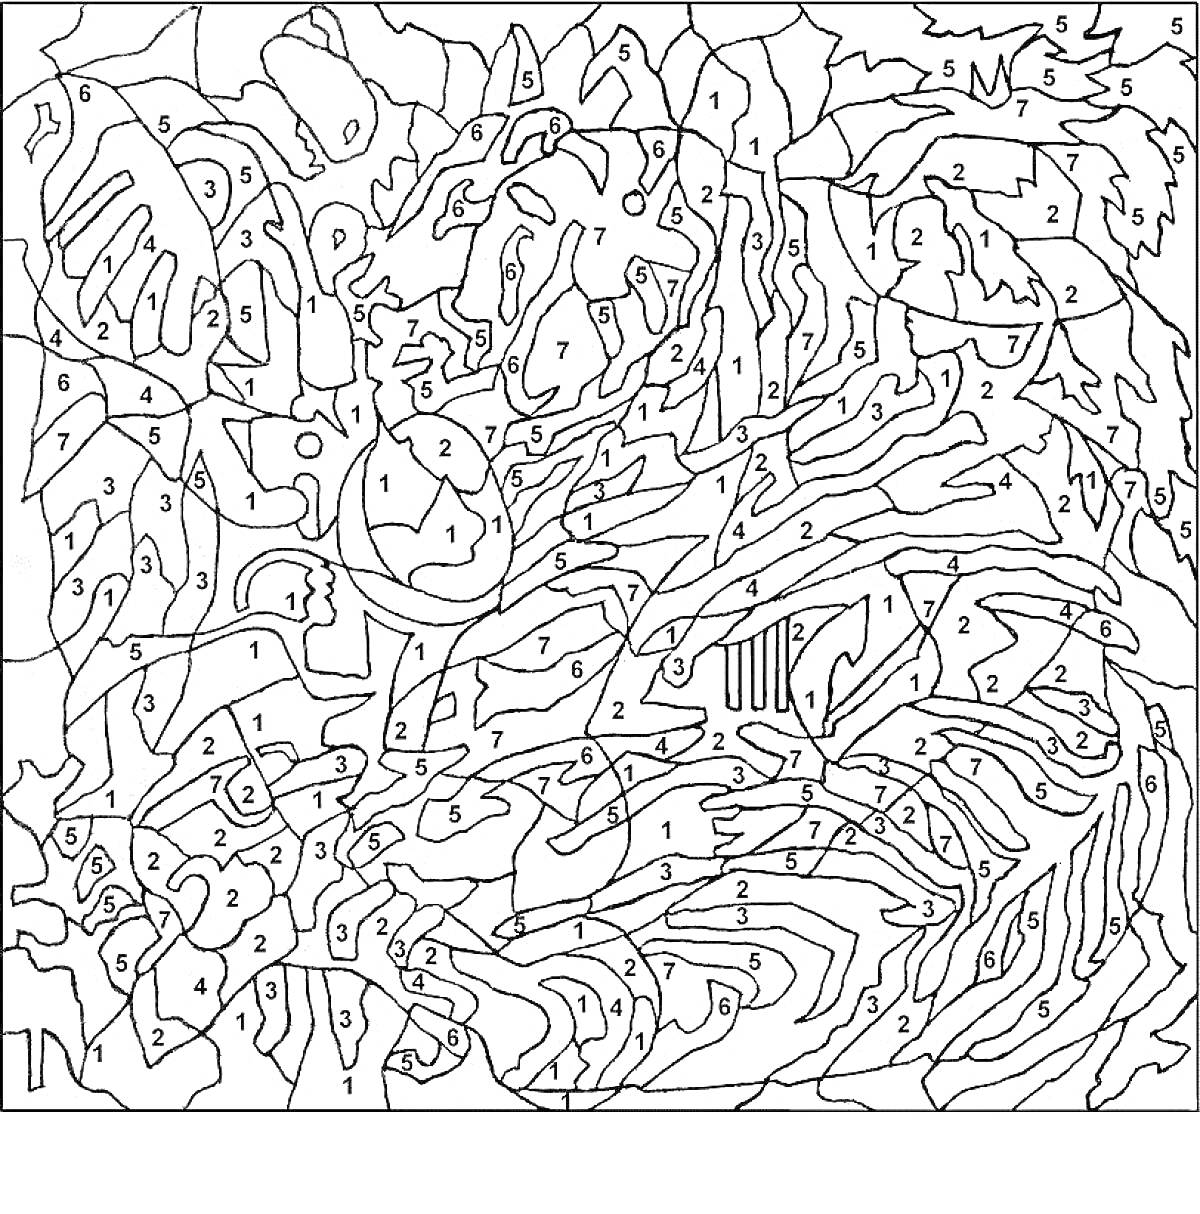 Раскраска Картина по номерам с многочисленными извилистыми линиями и сегментами, предназначенная для окрашивания по цифрам